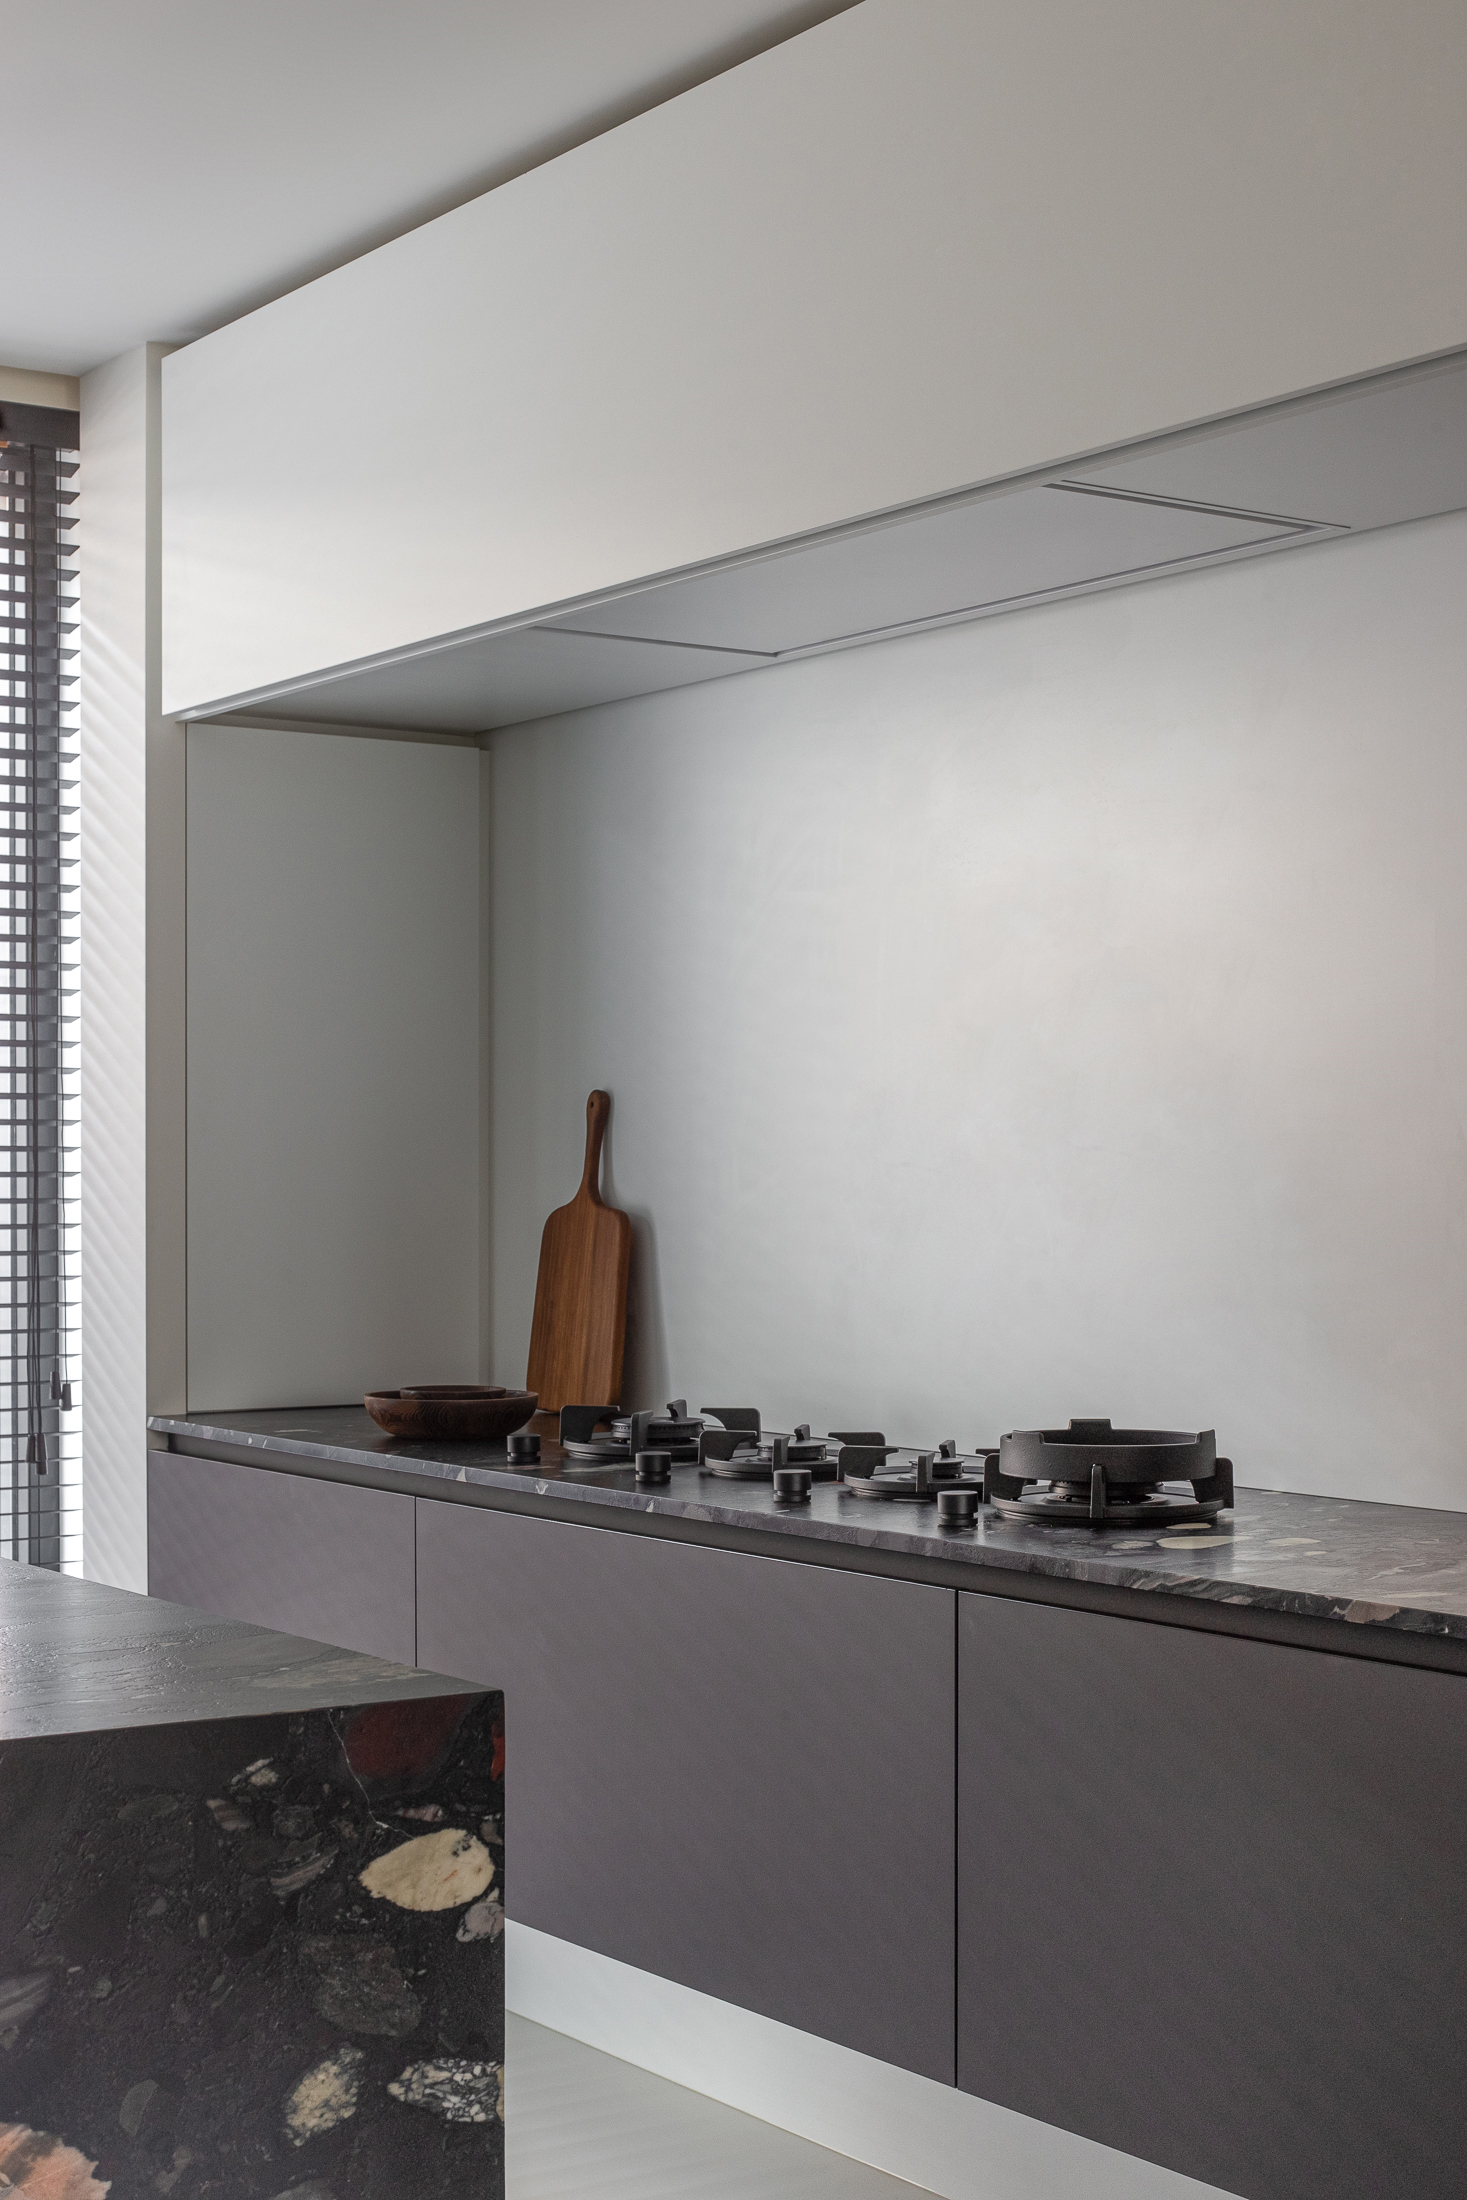 Trouvez la hotte plafond idéale pour votre cuisine en 5 étapes - Novy